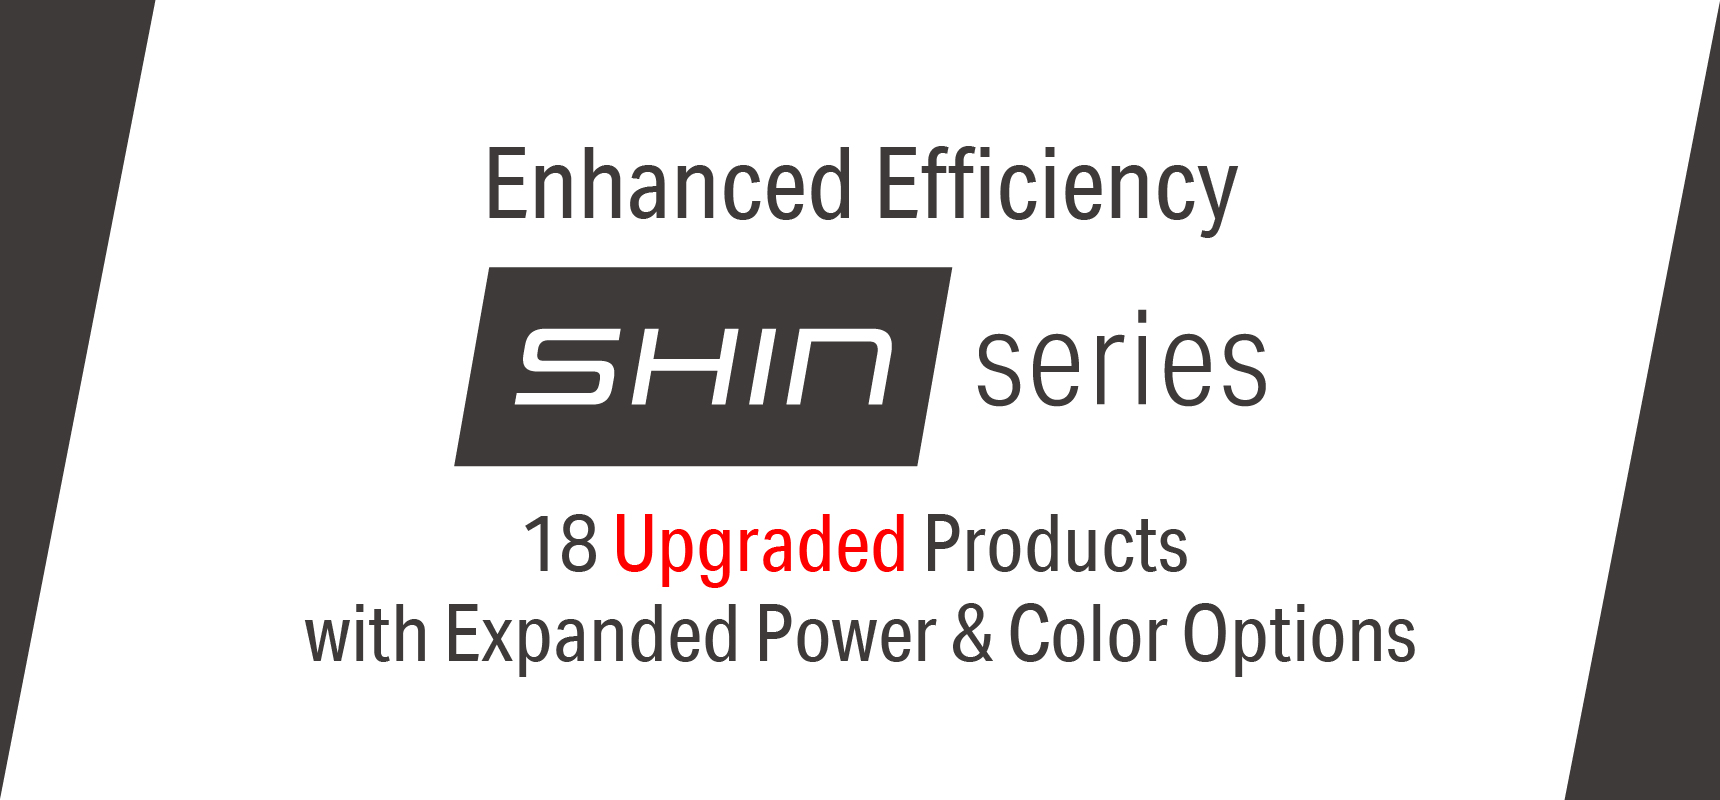 SHIN Series – A New chapter has begun!